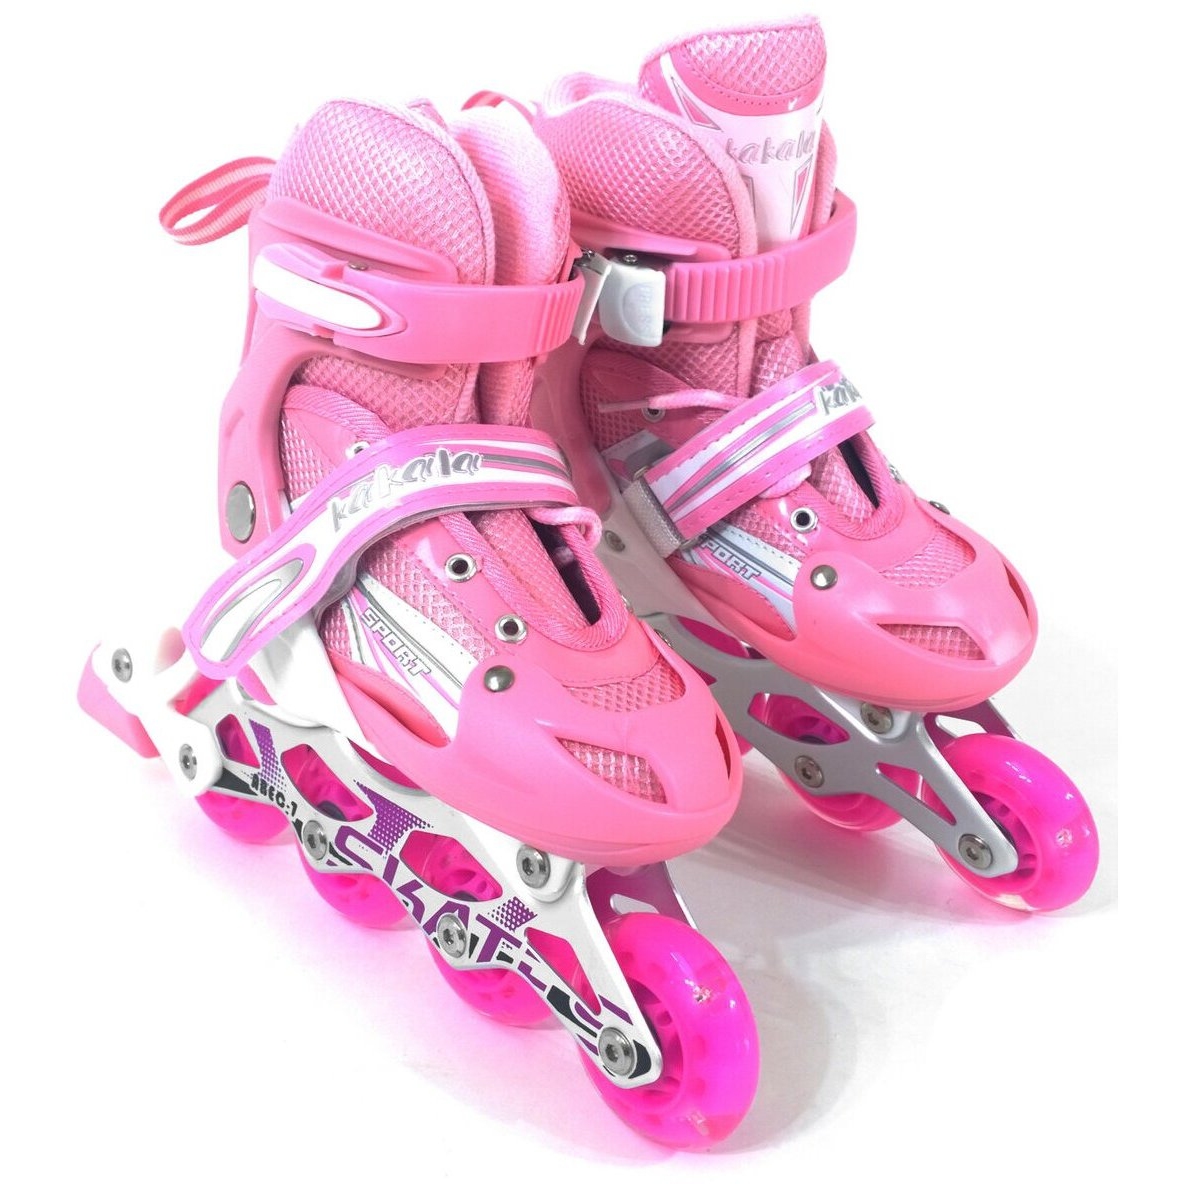 Роликовые коньки розовые размер S (31-34) DJS-905 PU